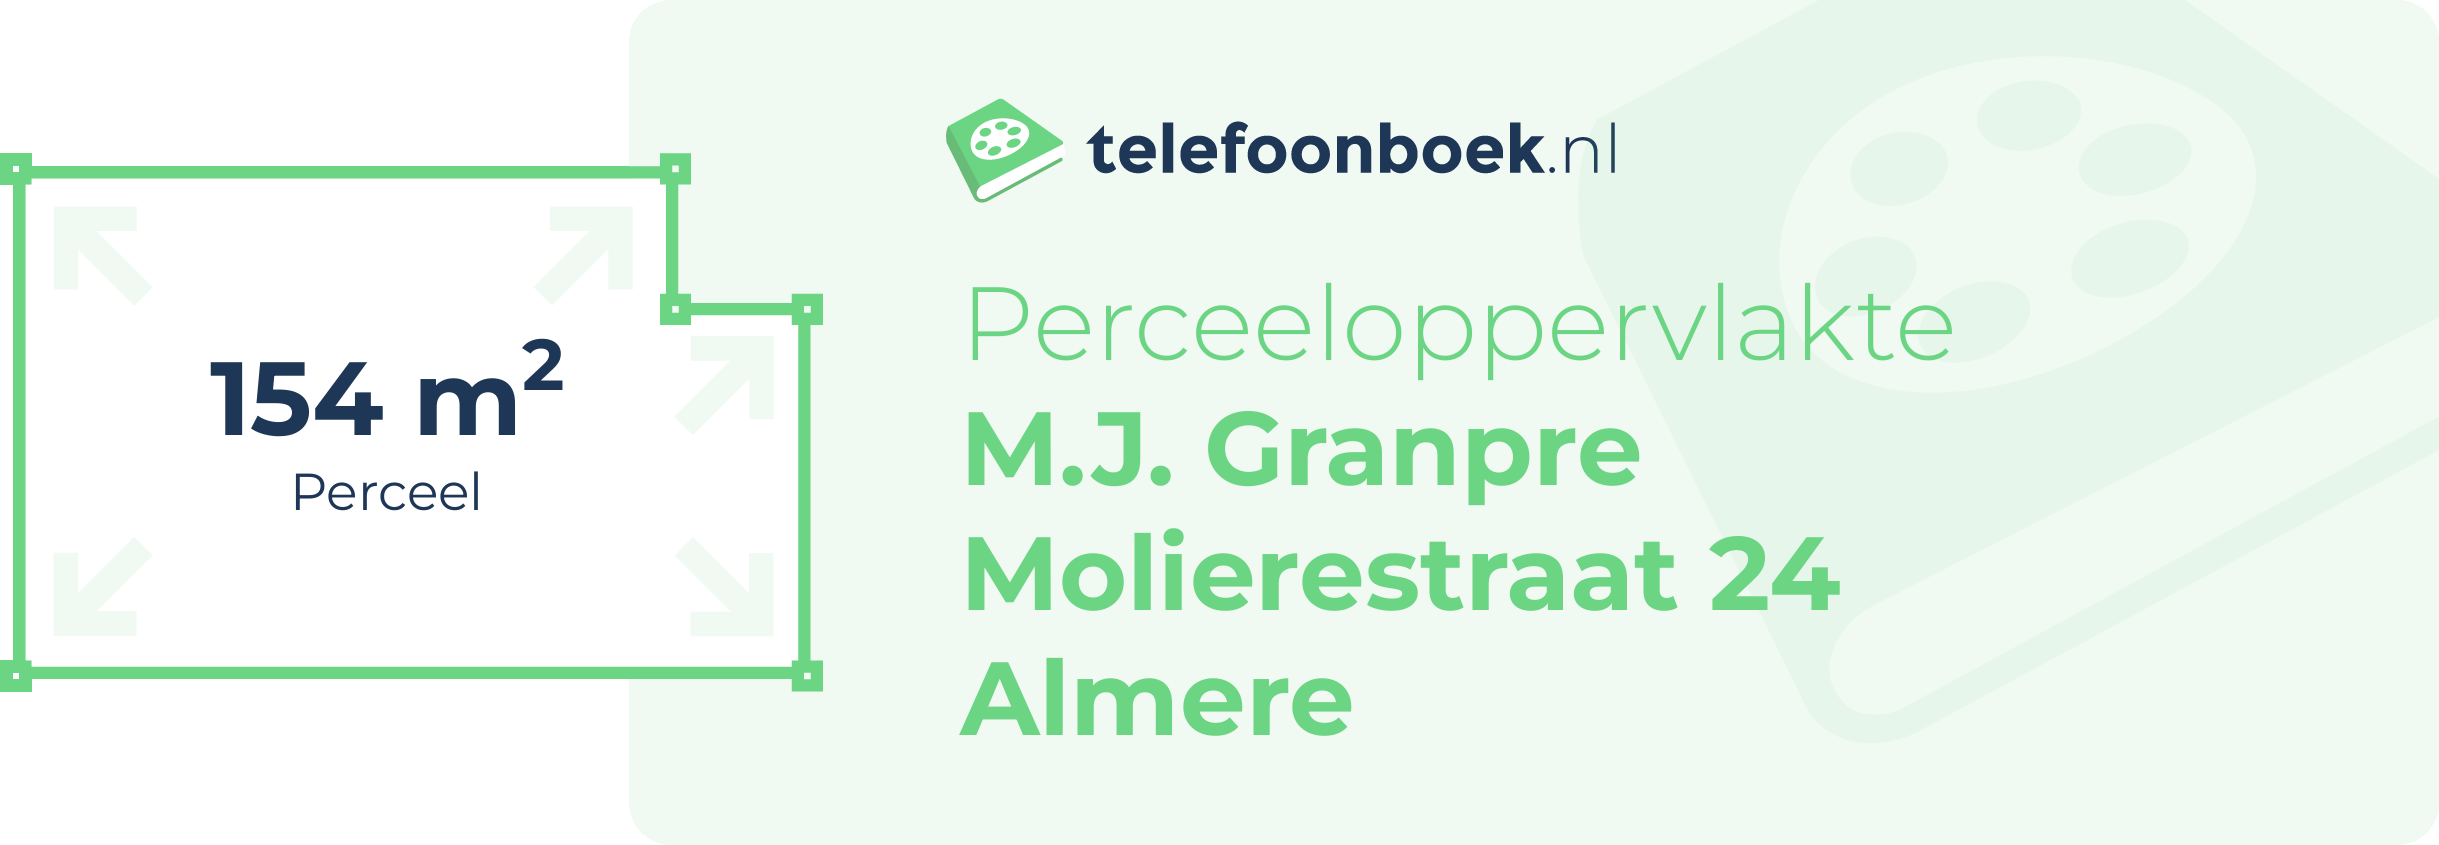 Perceeloppervlakte M.J. Granpre Molierestraat 24 Almere